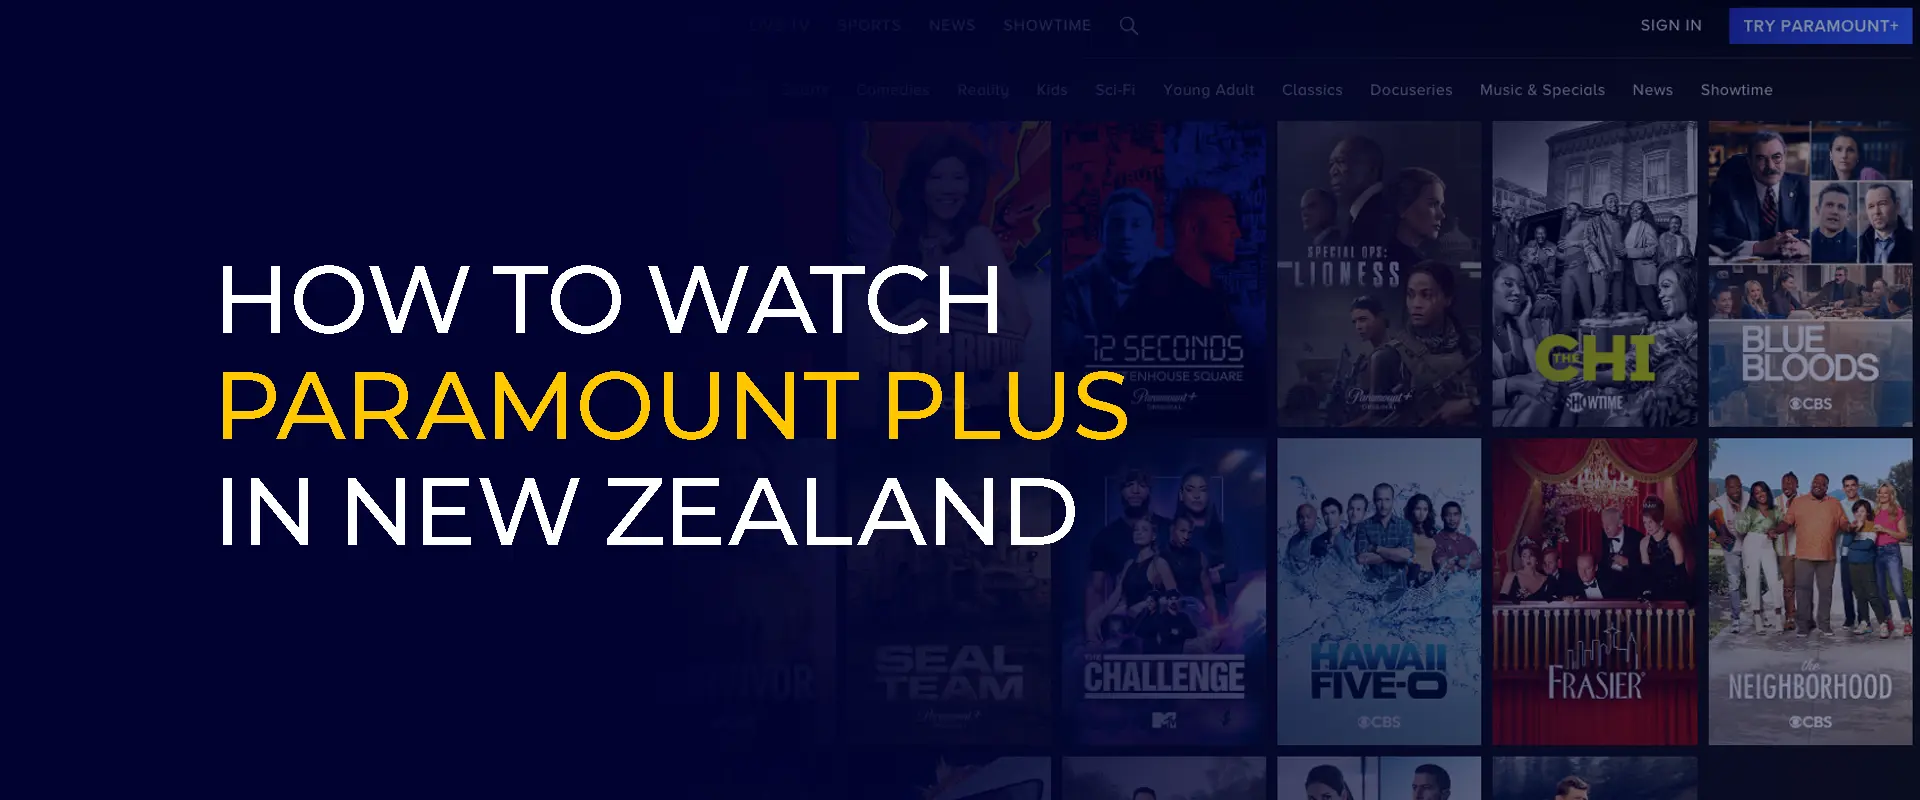 Como assistir Paramount Plus na Nova Zelândia